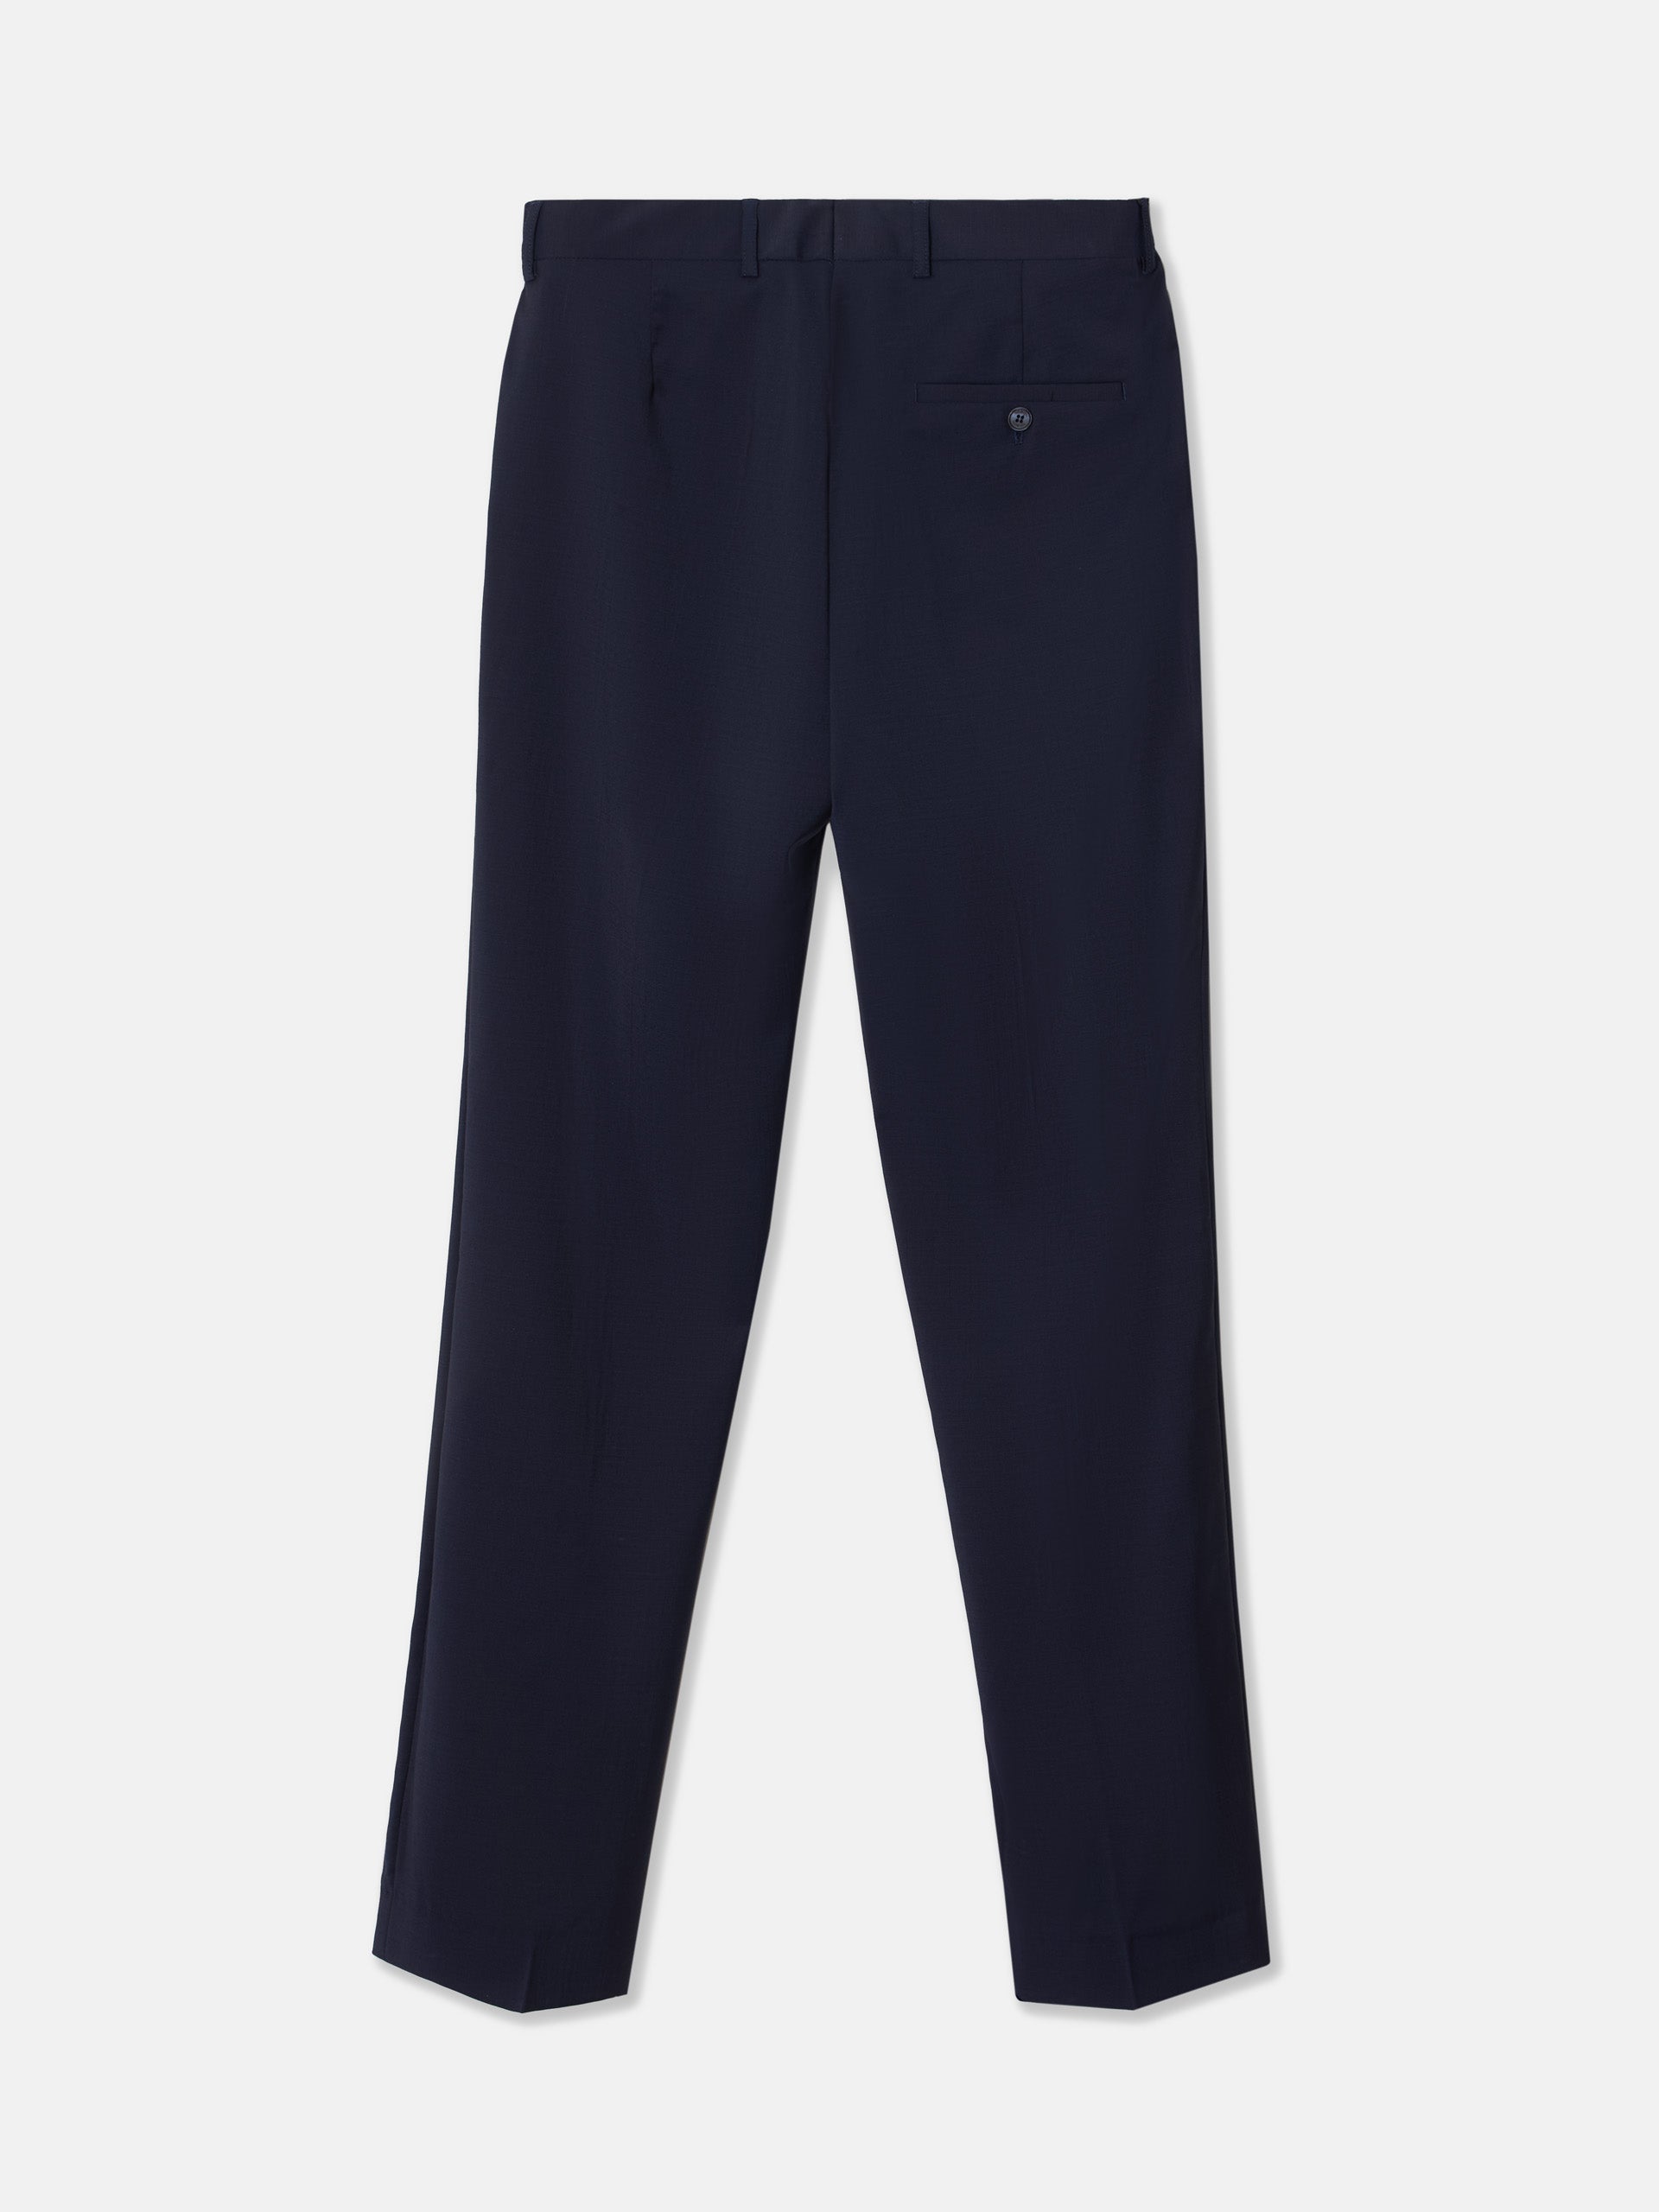 Natural stretch light blue suit pants